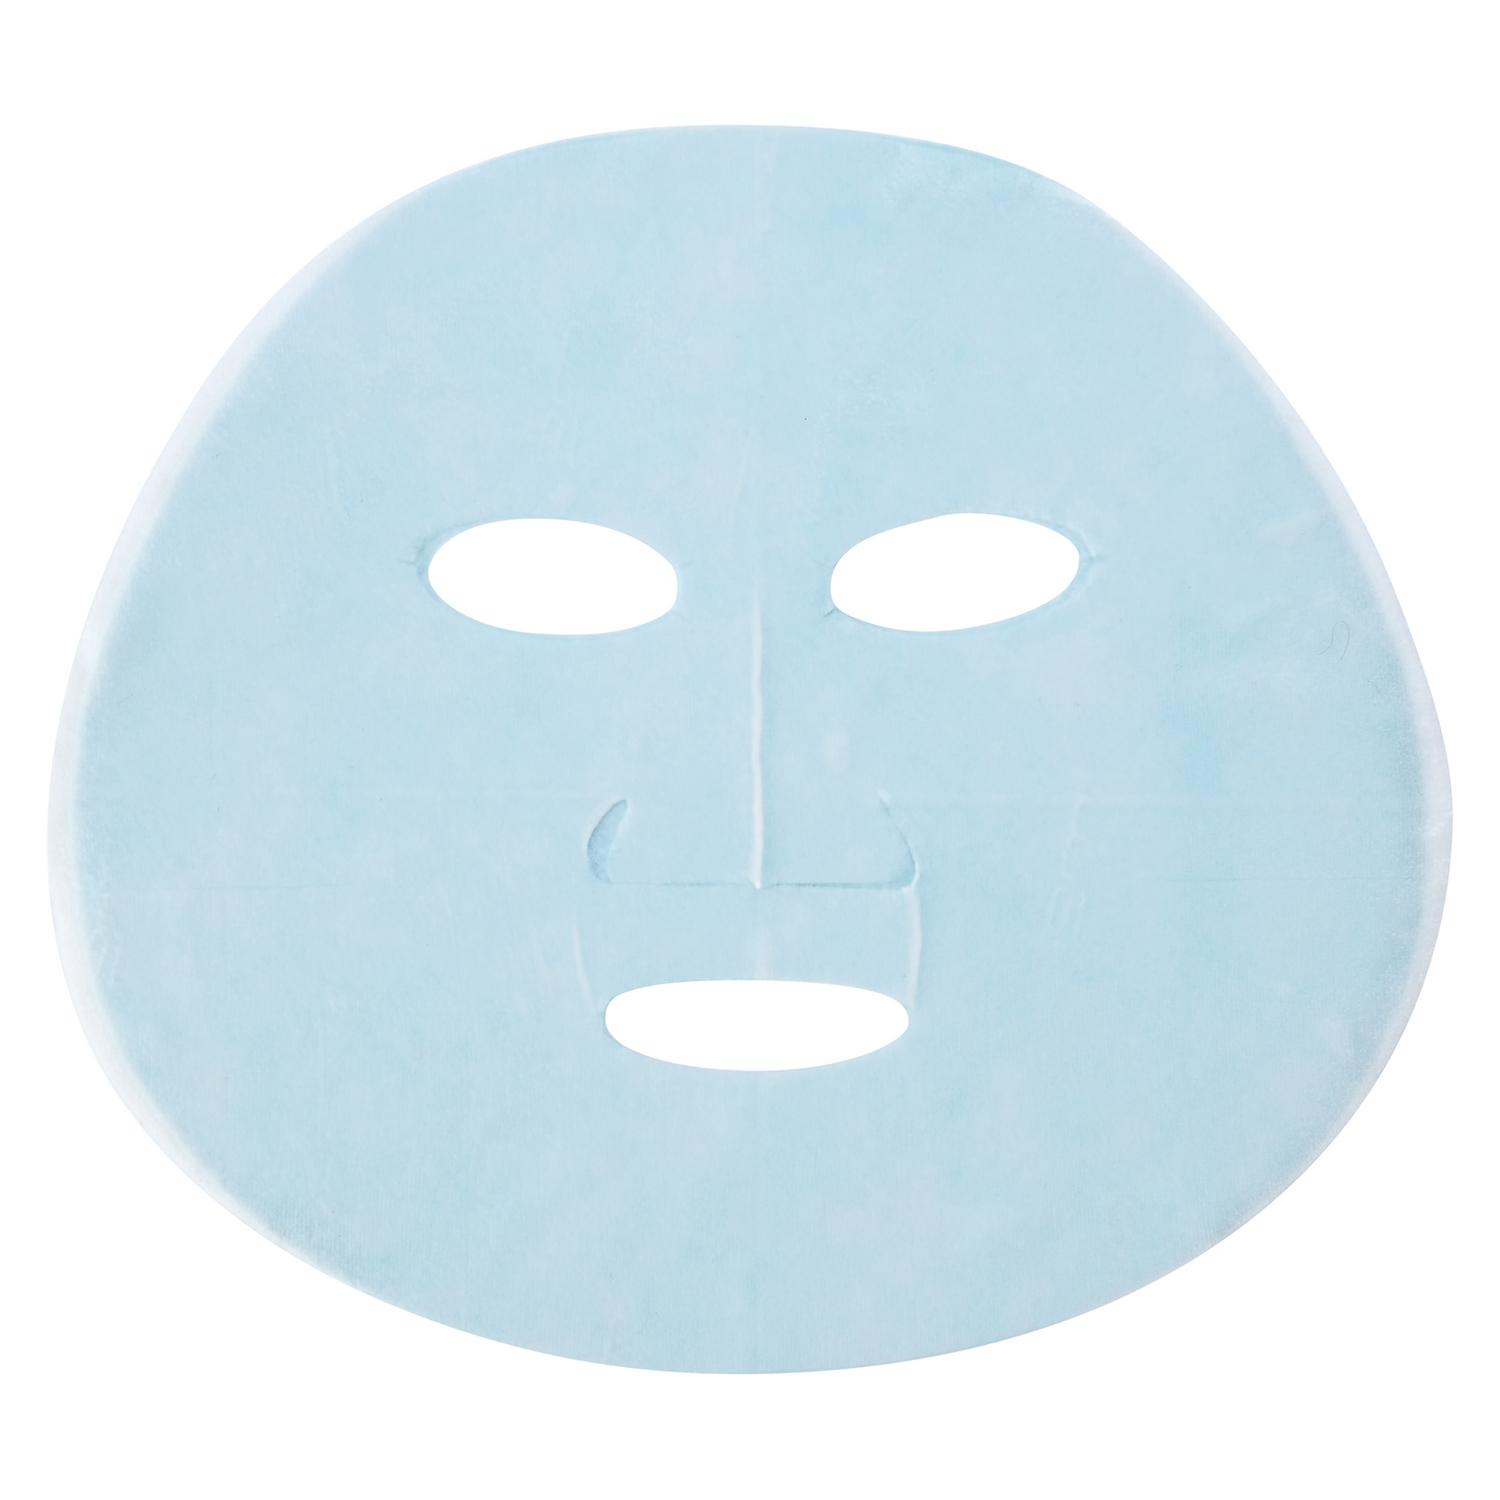 Тканевая маска Garnier Увлажнение + Аква Бомба 1 шт, размер 17x2x16,5 см C5512800 - фото 3